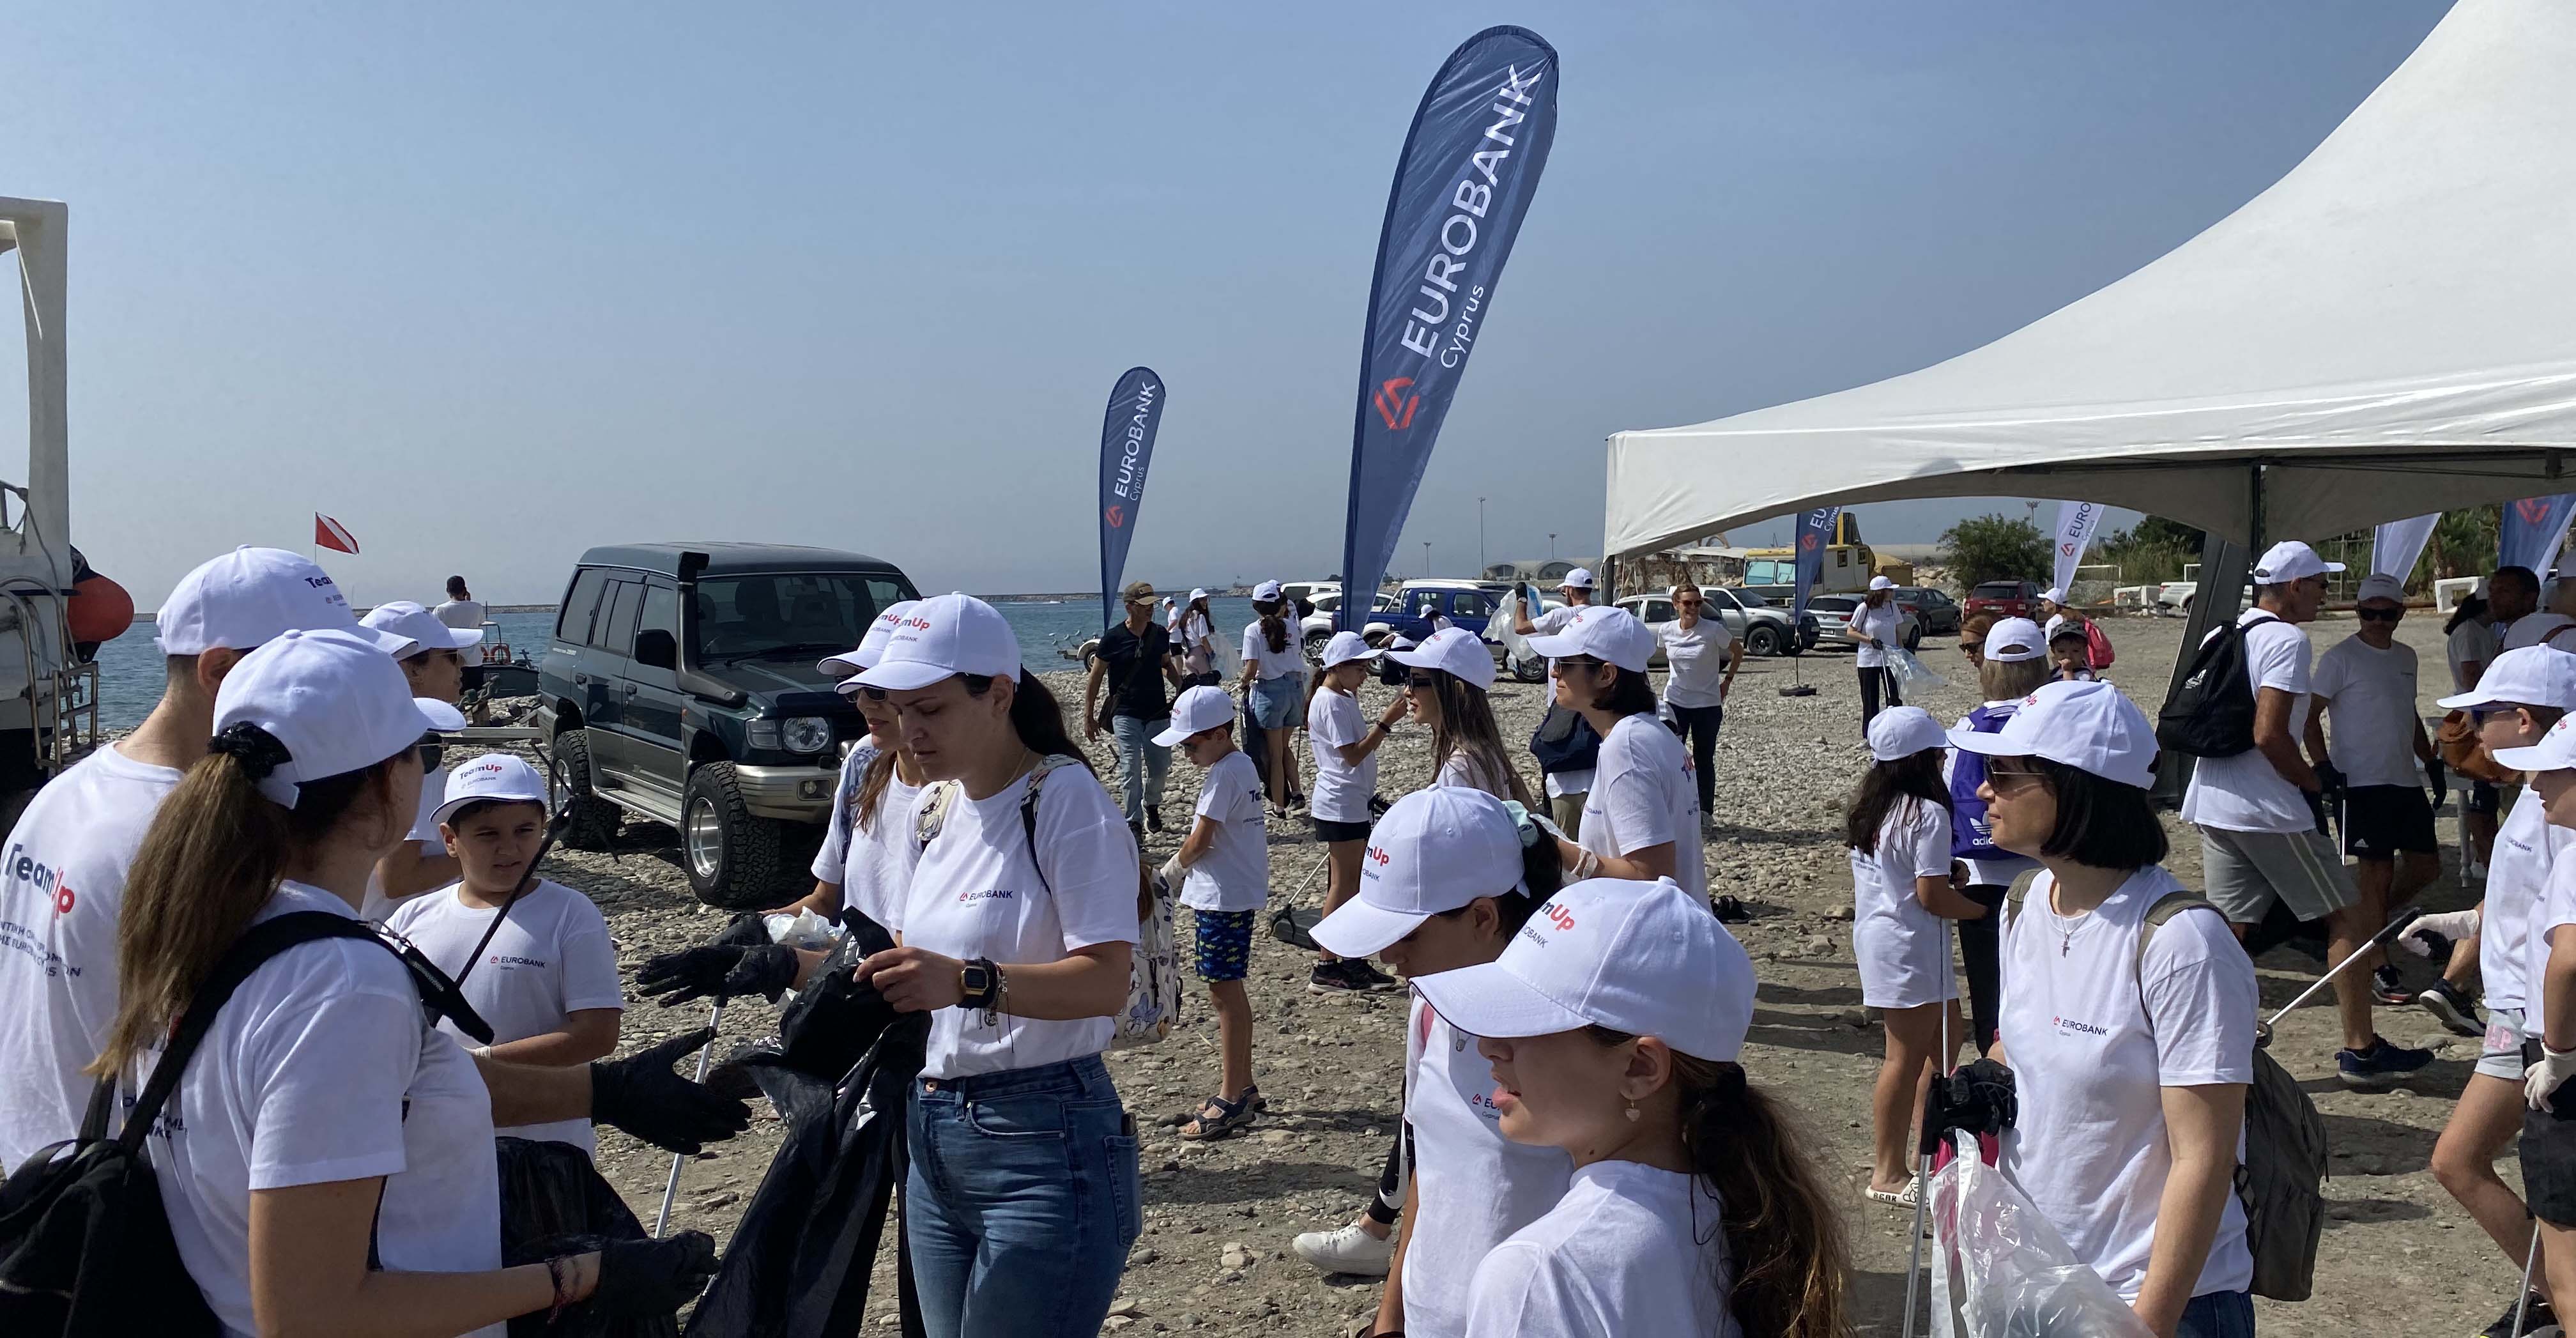 Η εθελοντική ομάδα TeamUp της Eurobank Κύπρου συνέλεξε 822 κιλά απορριμμάτων από την παραλία και τον βυθό στο Καρνάγιο της Λεμεσού